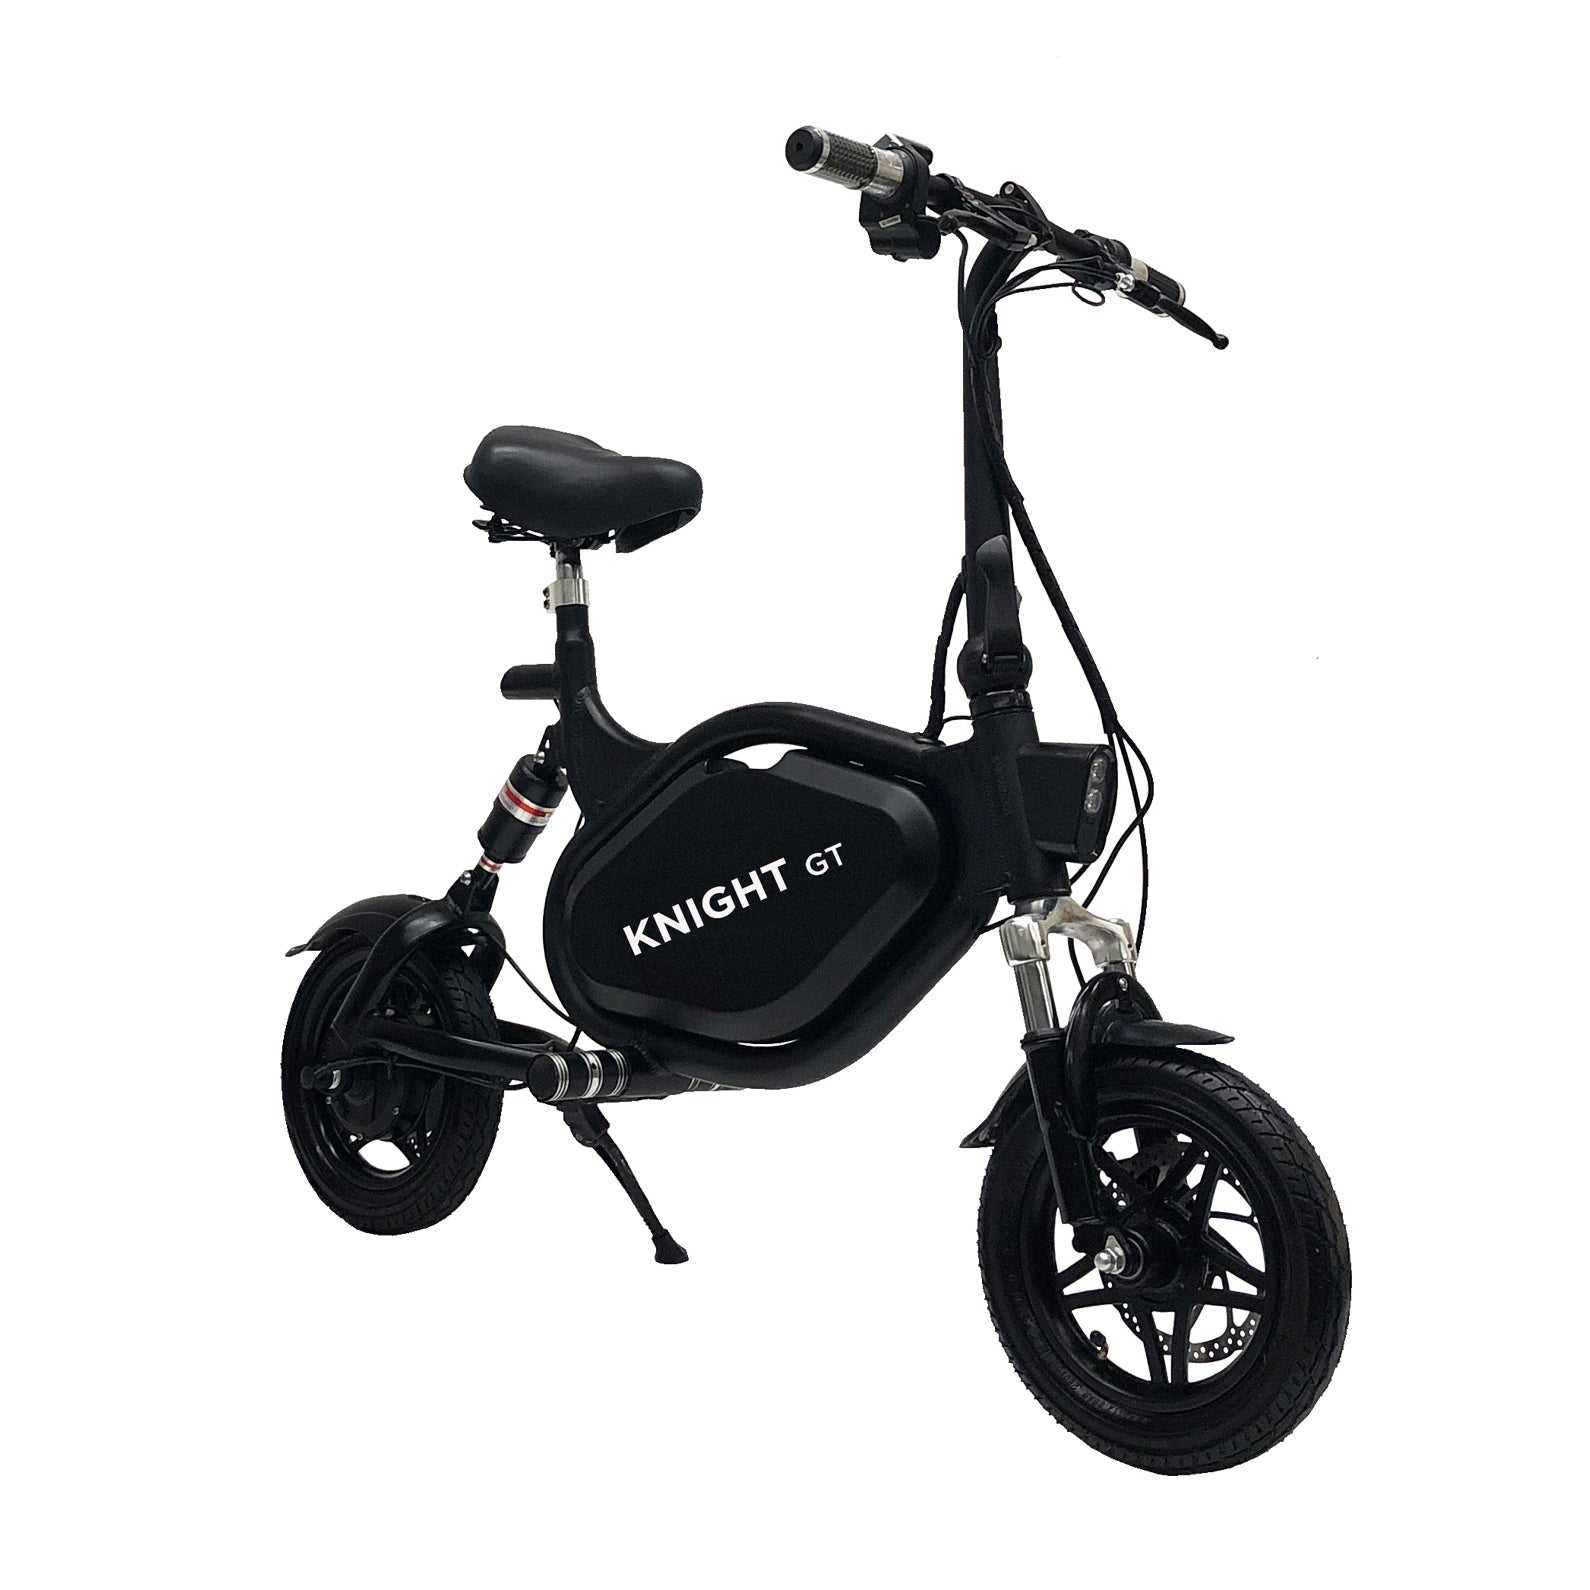 kernel scooter